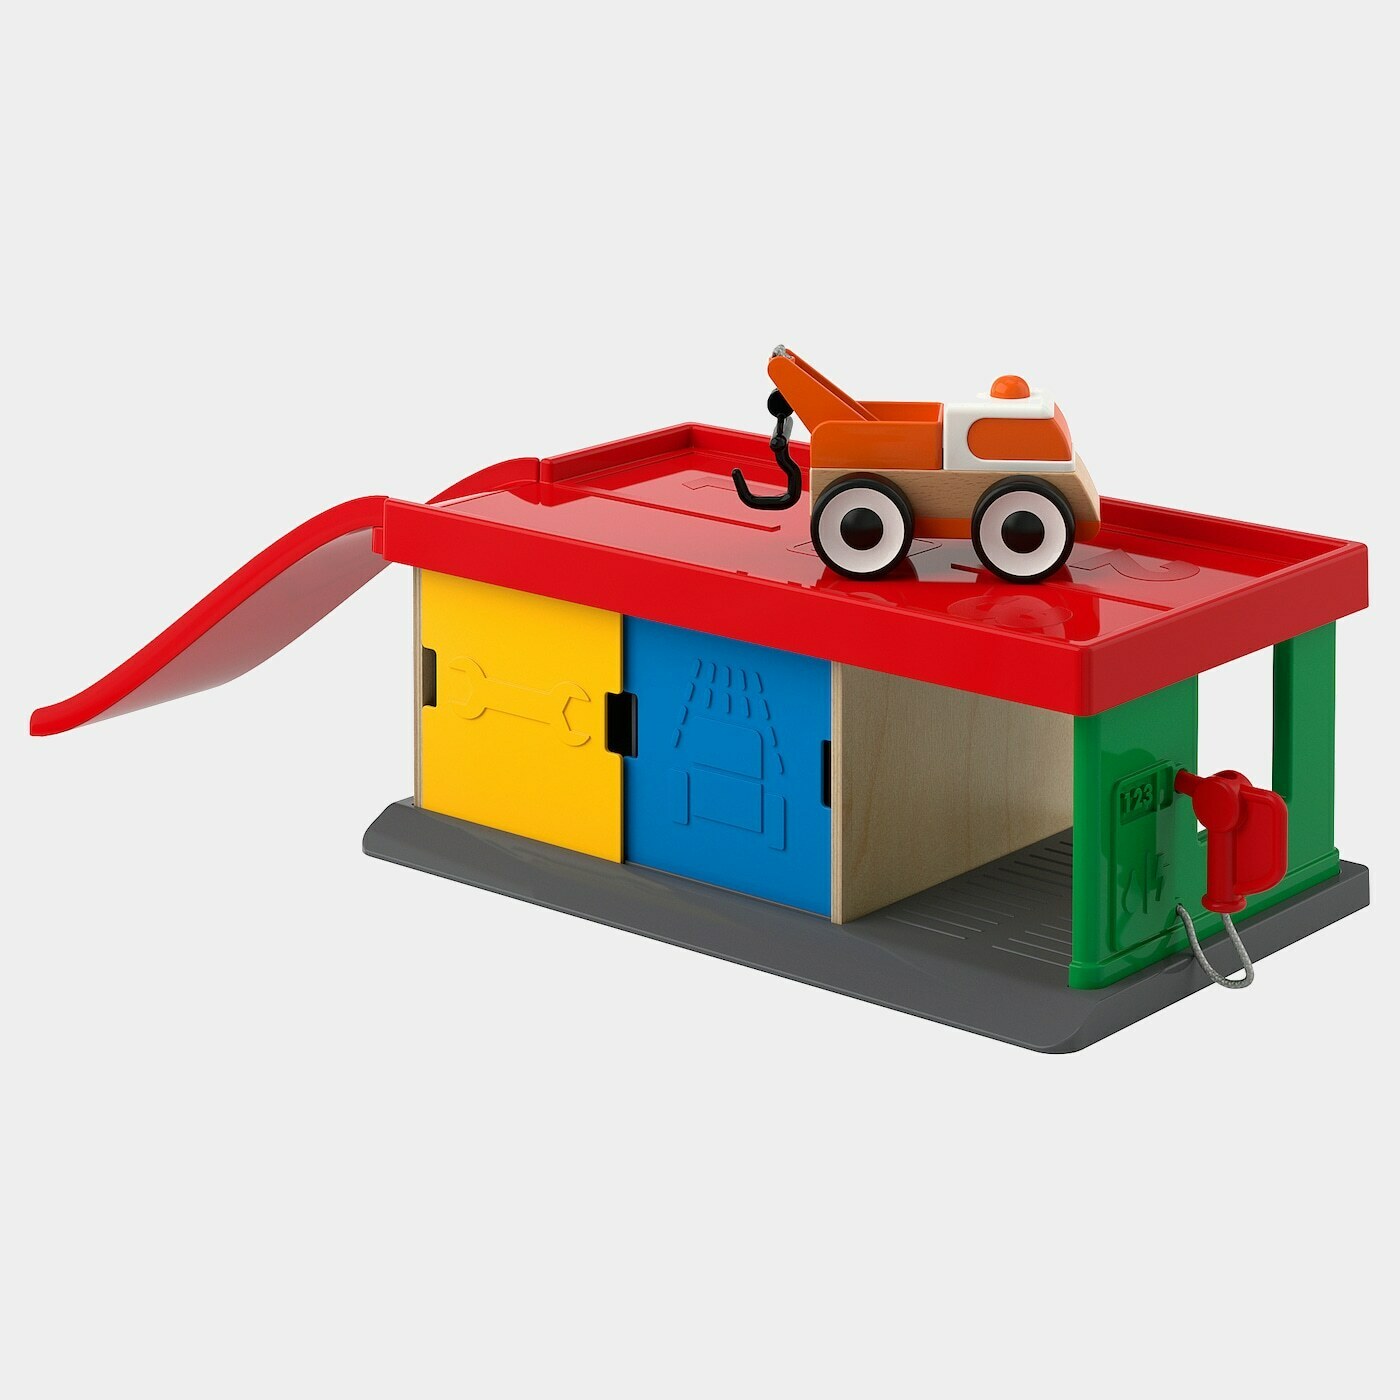 LILLABO Tankstelle mit Abschleppwagen  - Spielzeug - Babyausstattung & Kinderzimmerzubehör Ideen für dein Zuhause von Home Trends. Babyausstattung & Kinderzimmerzubehör Trends von Social Media Influencer für dein Skandi Zuhause.